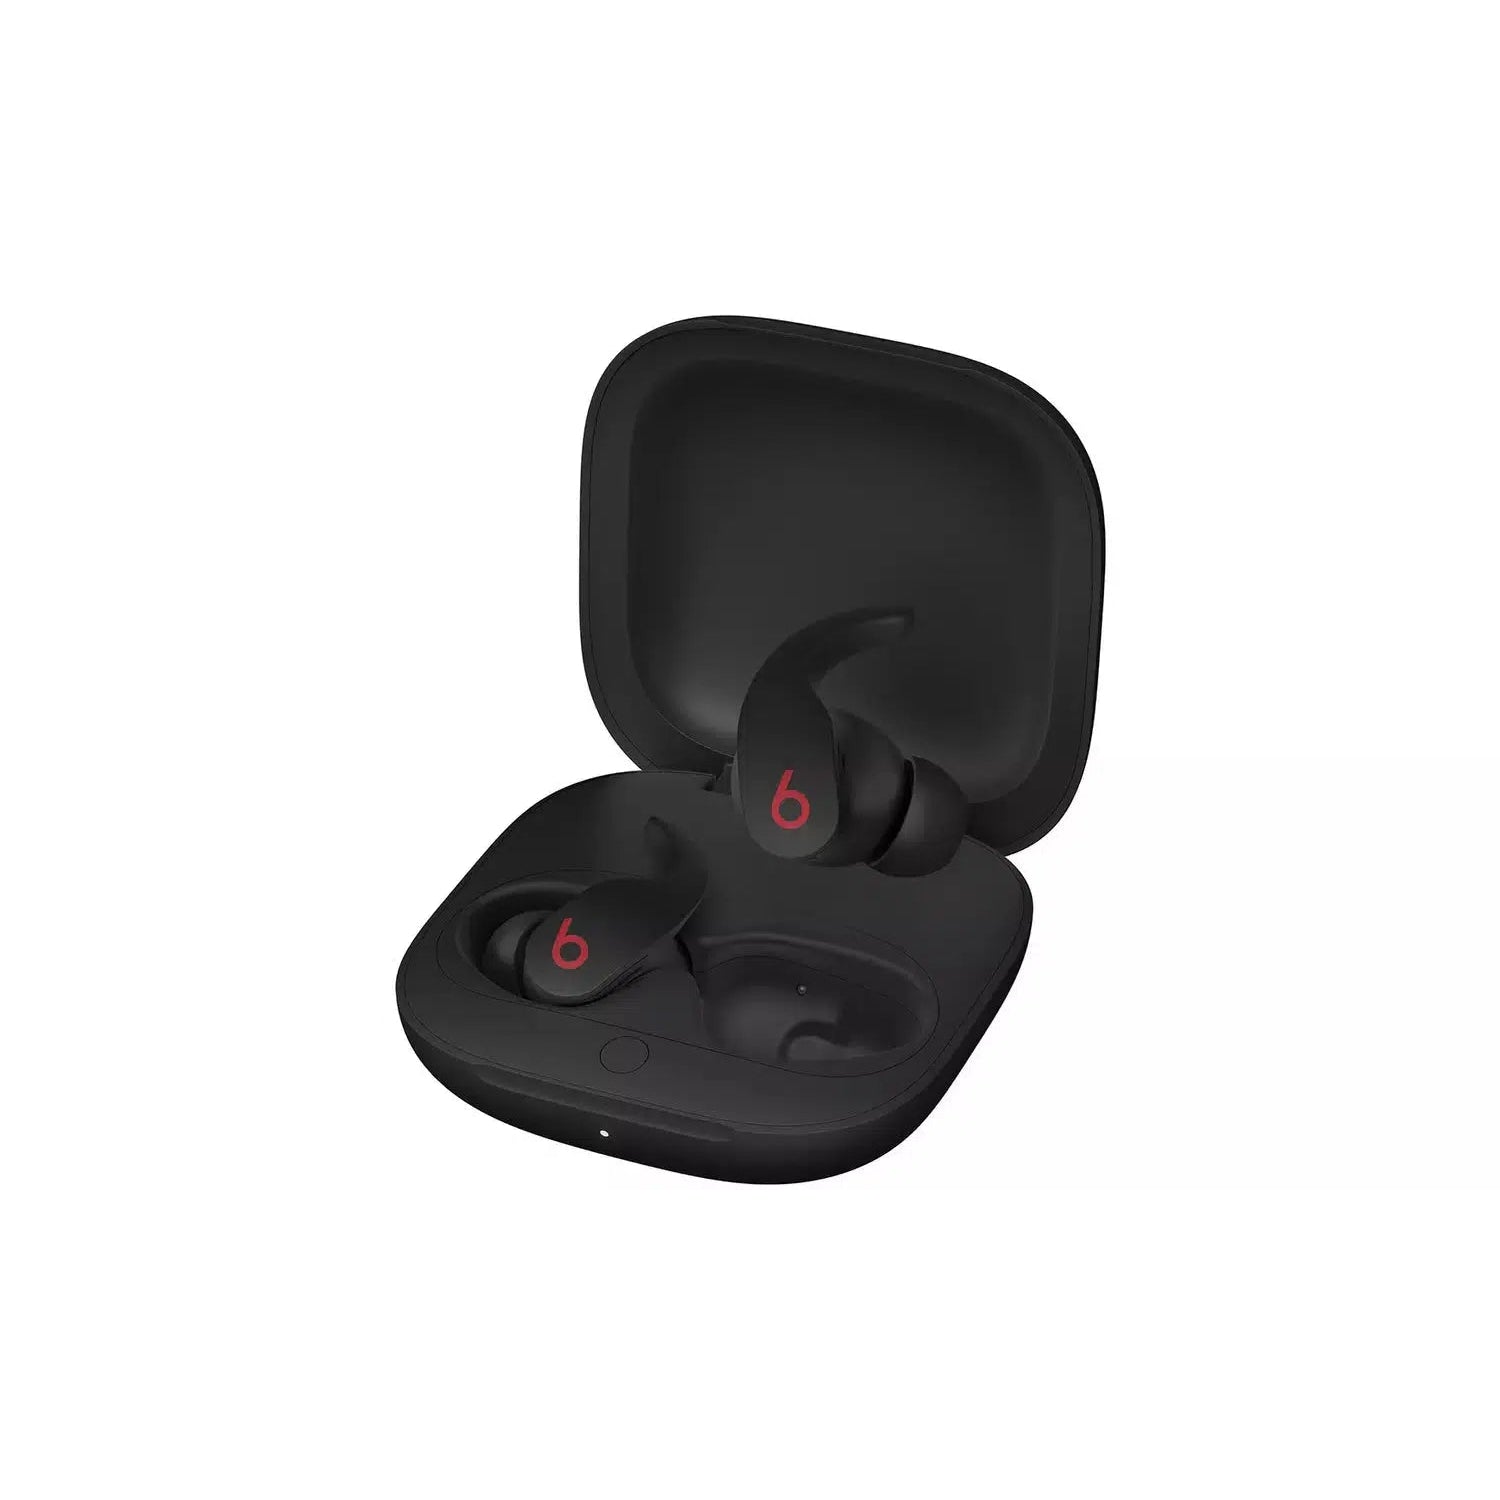 Beats Fit Pro True Wireless In-Ear Earbuds - Black - Refurbished Pristine